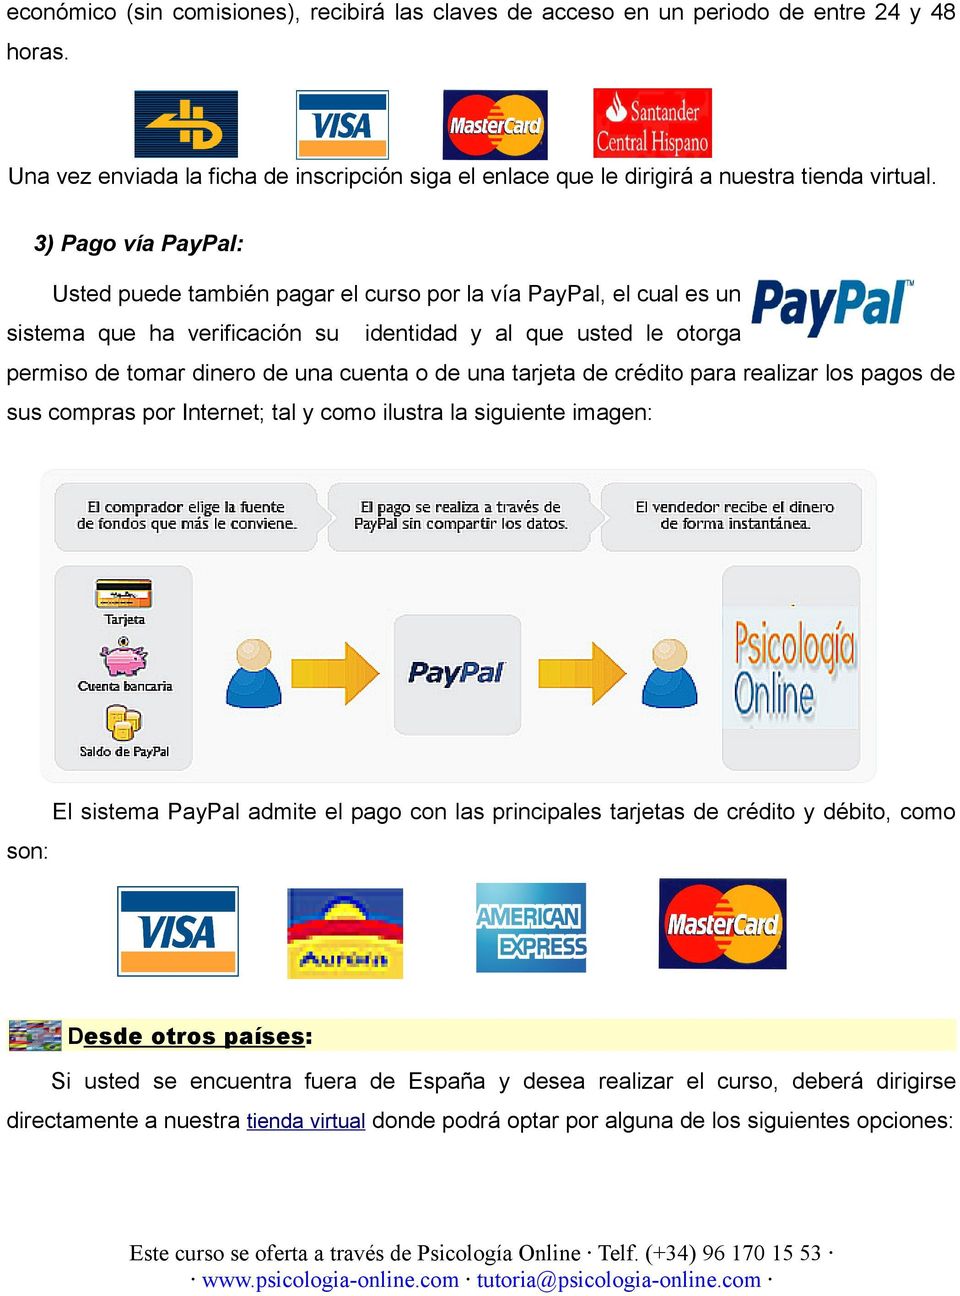 una tarjeta de crédito para realizar los pagos de sus compras por Internet; tal y como ilustra la siguiente imagen: son: El sistema PayPal admite el pago con las principales tarjetas de crédito y